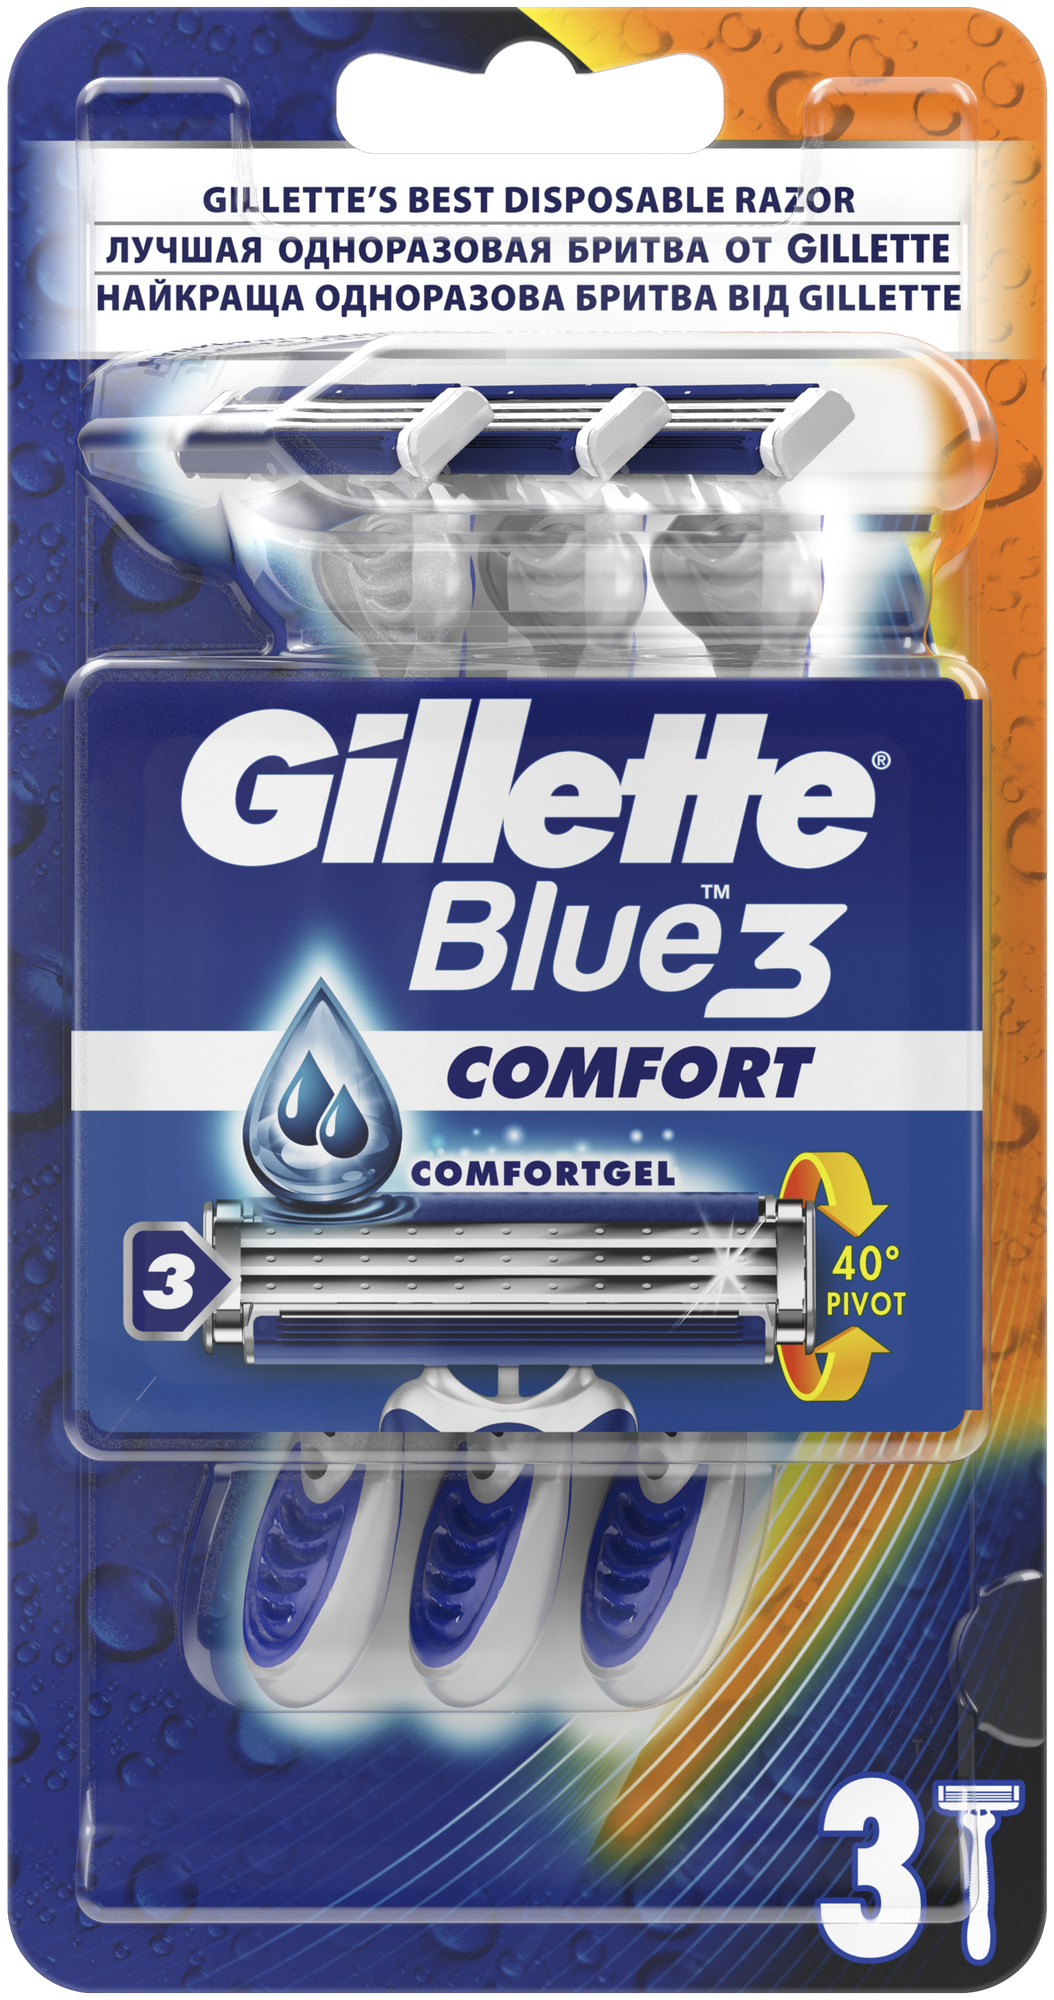 Одноразовый бритвенный станок Gillette Blue3 Comfort, синий, 3 шт.